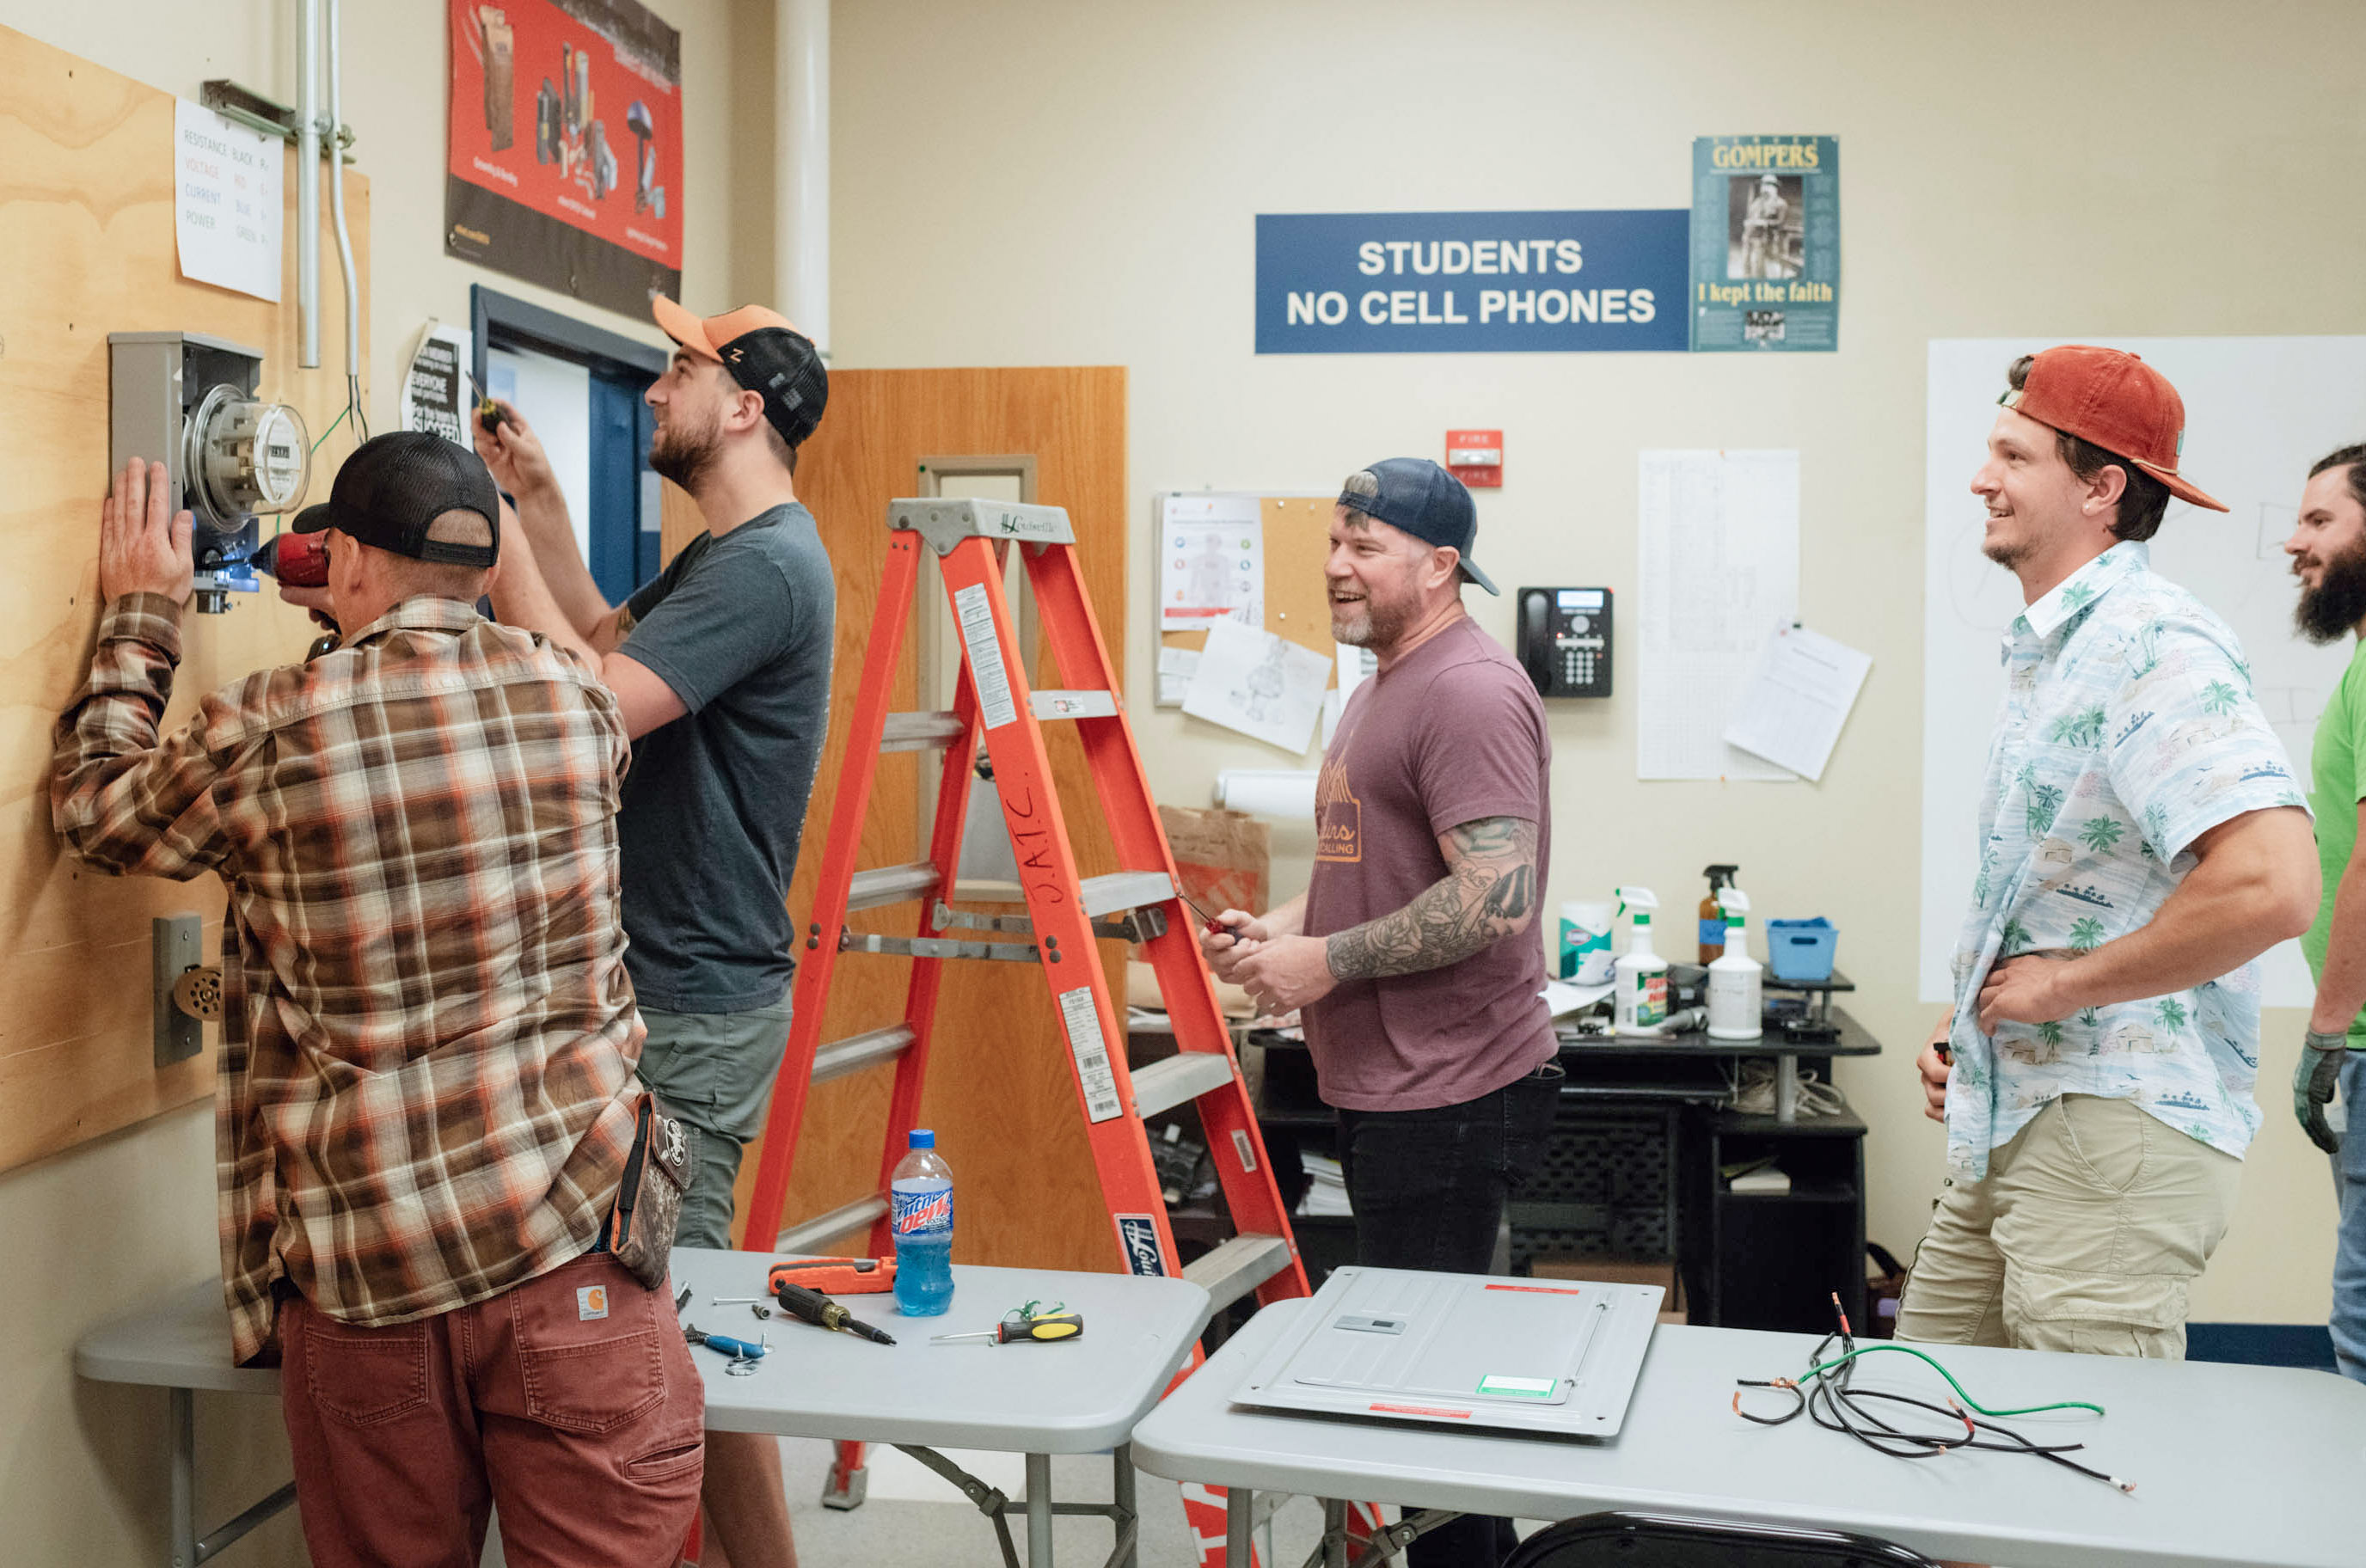 Un grupo de 5 hombres trabajan instalando un medidor eléctrico en un salón de clases.